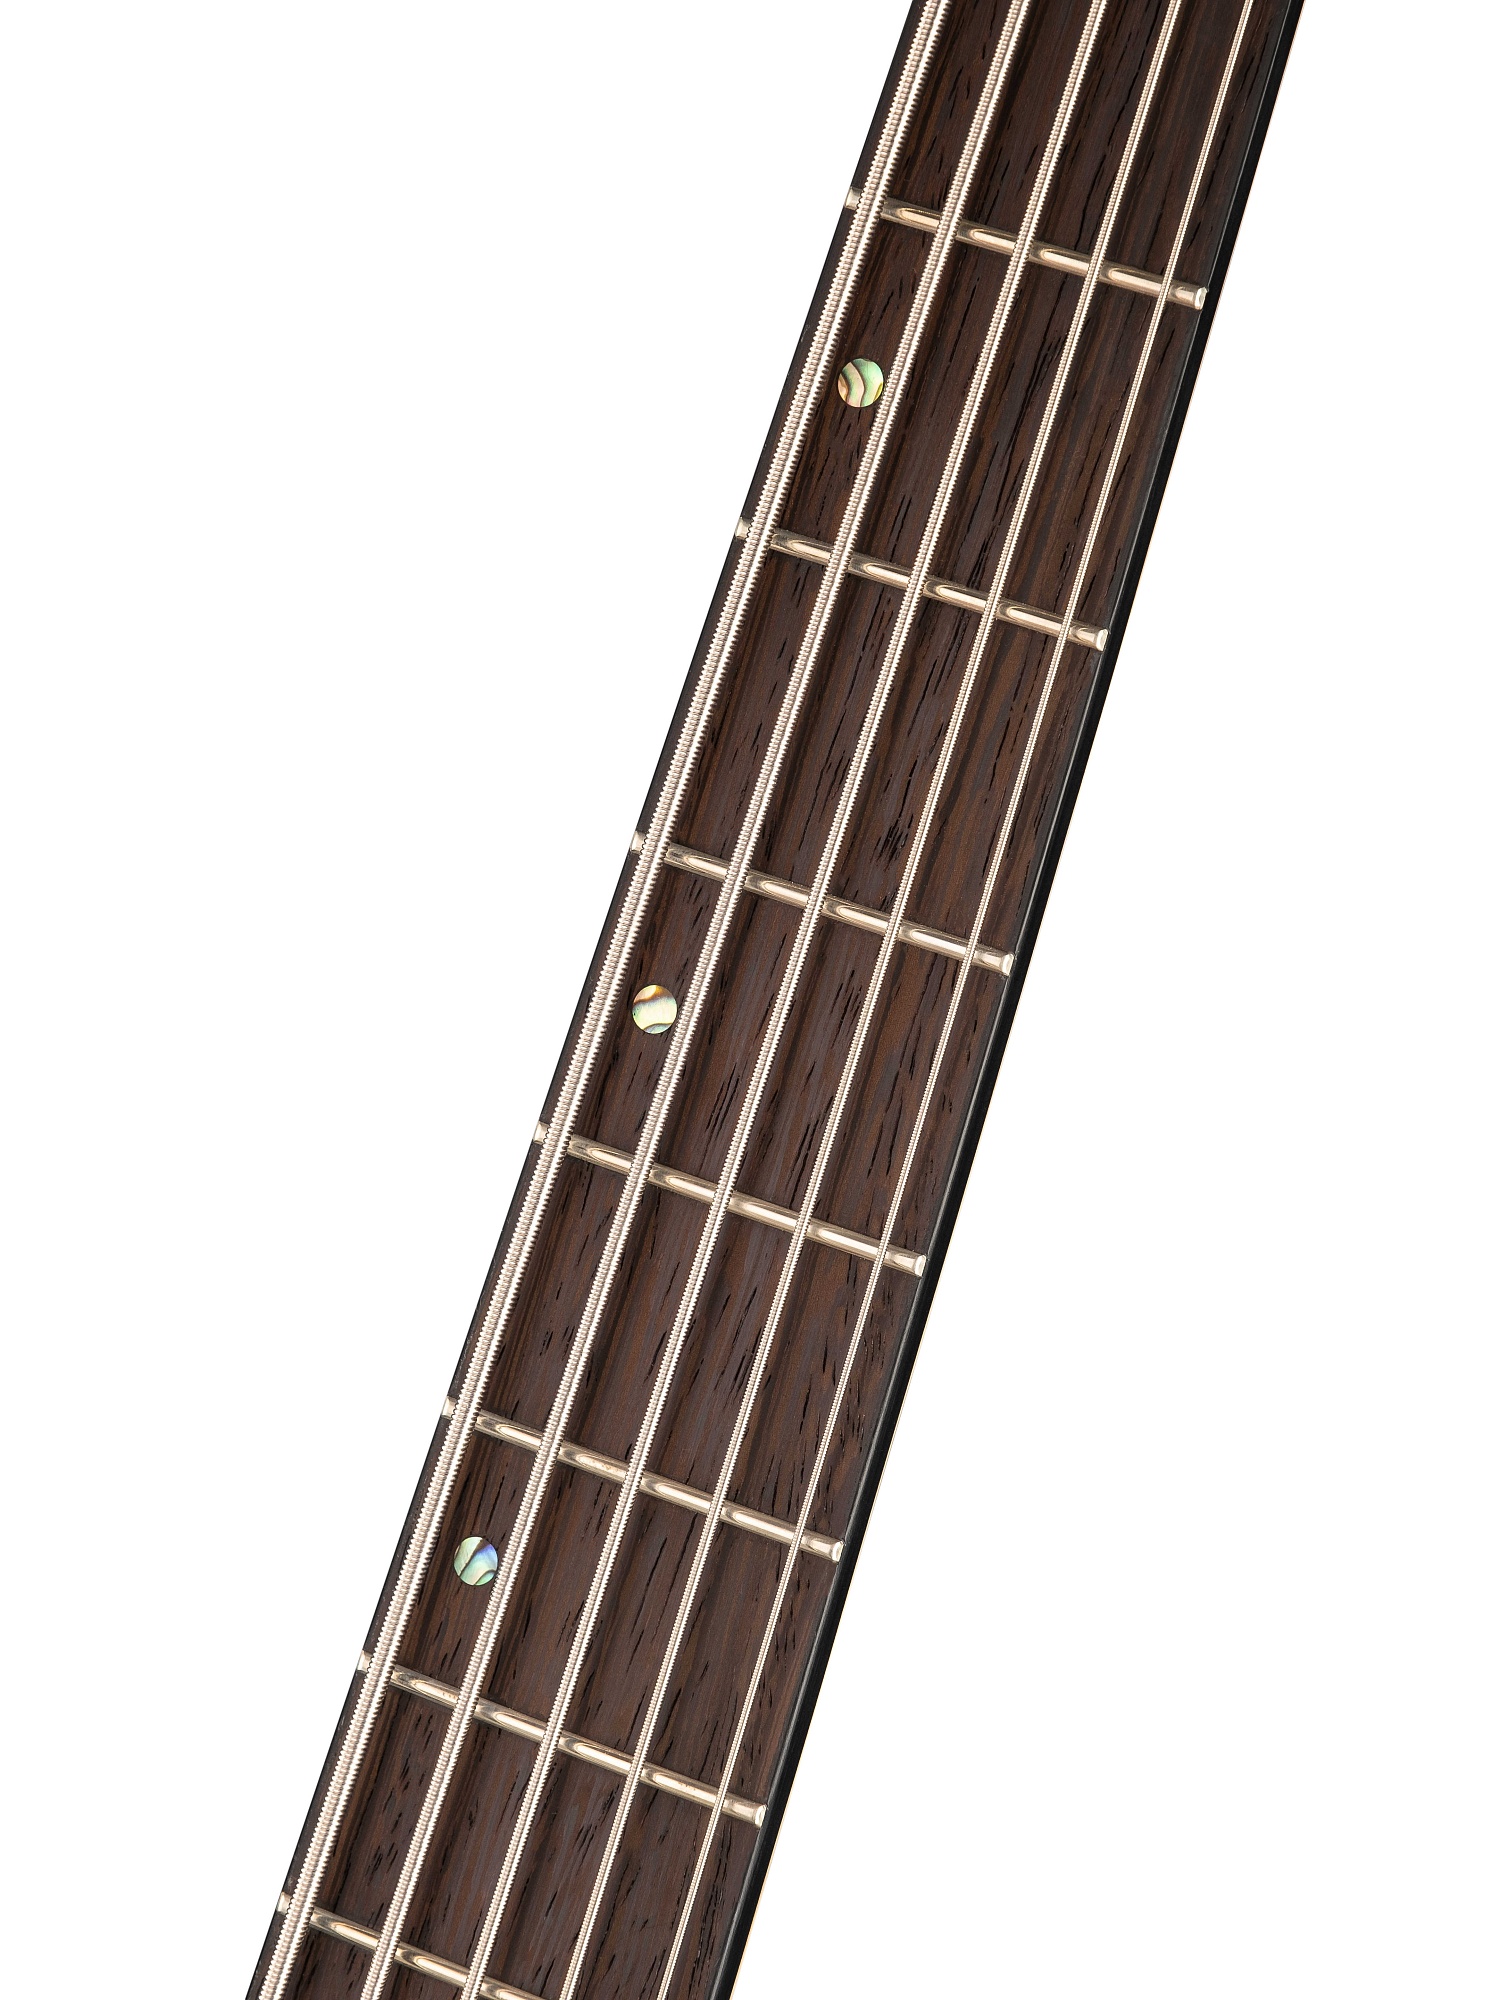 A5-Plus-SC-AOP Artisan Series Бас-гитара 5-струнная, цвет янтарь, с чехлом Cort купить в prostore.me